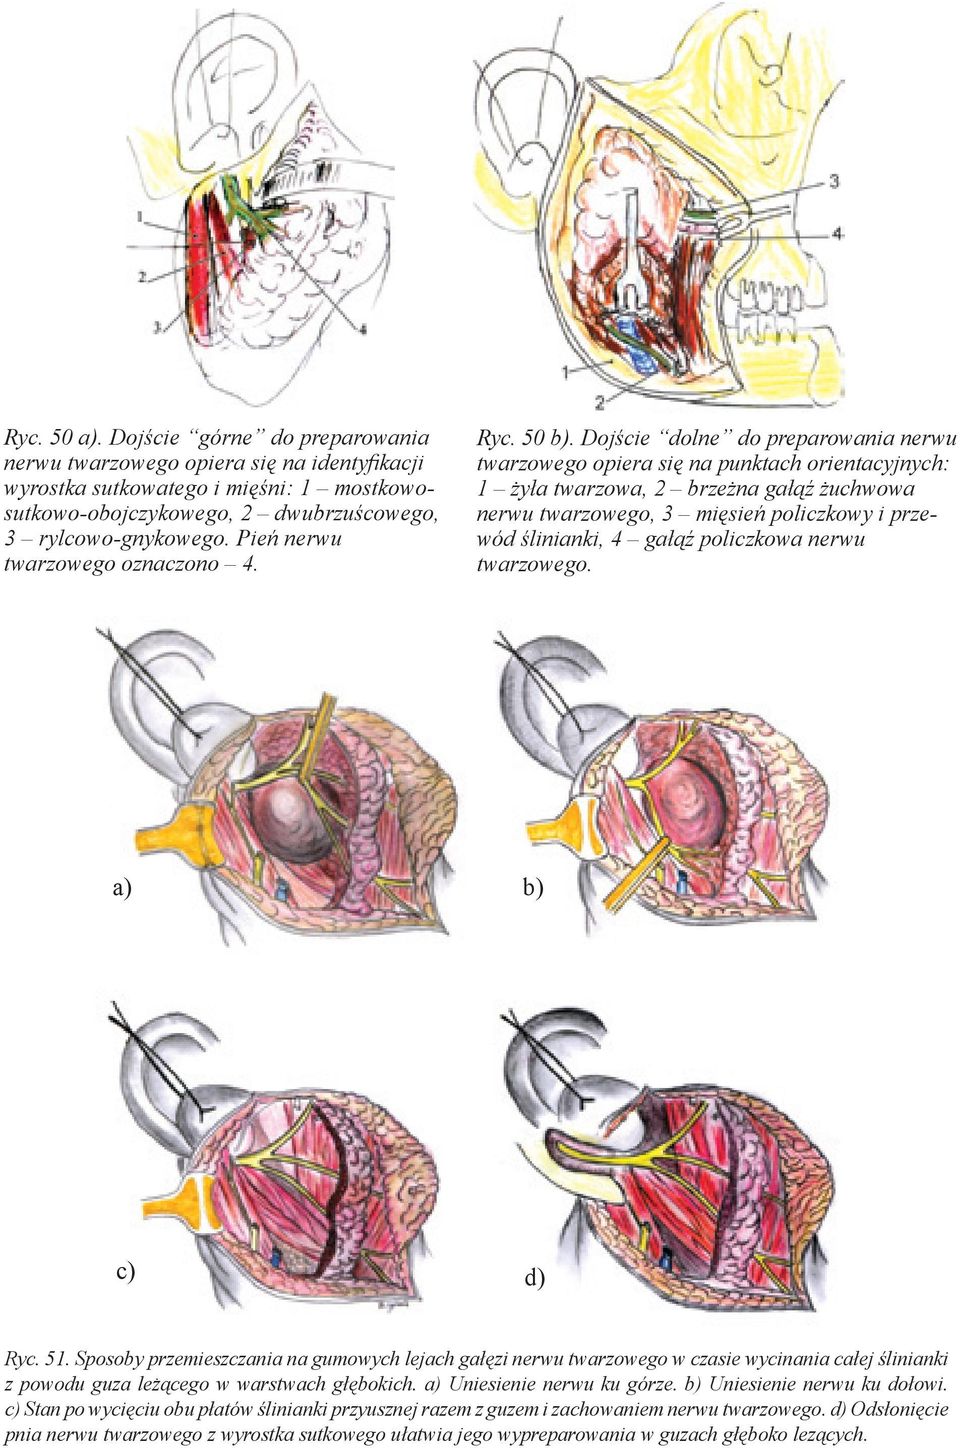 Dojście dolne do preparowania nerwu twarzowego opiera się na punktach orientacyjnych: 1 żyła twarzowa, 2 brzeżna gałąź żuchwowa nerwu twarzowego, 3 mięsień policzkowy i przewód ślinianki, 4 gałąź